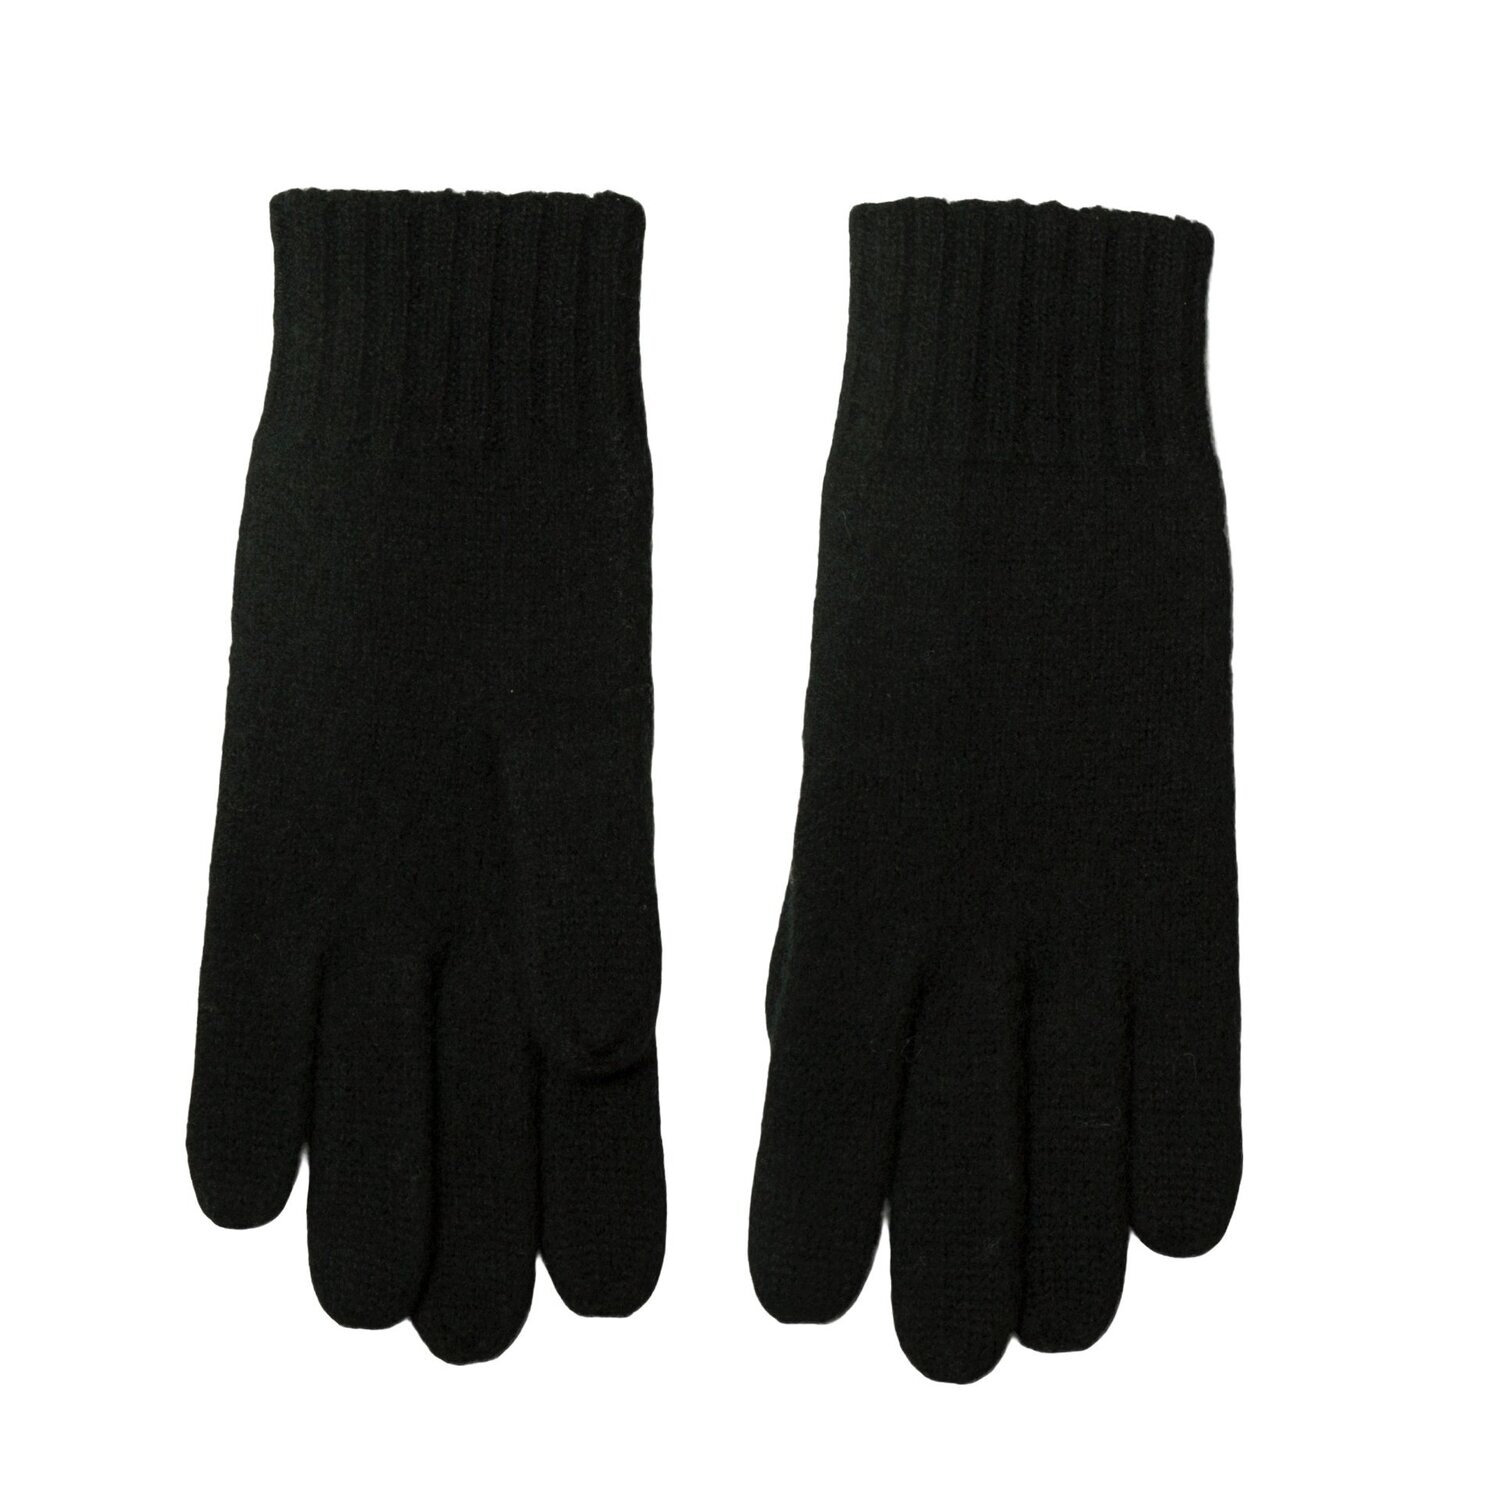 Herren Handschuhe 100% Wolle schwarz